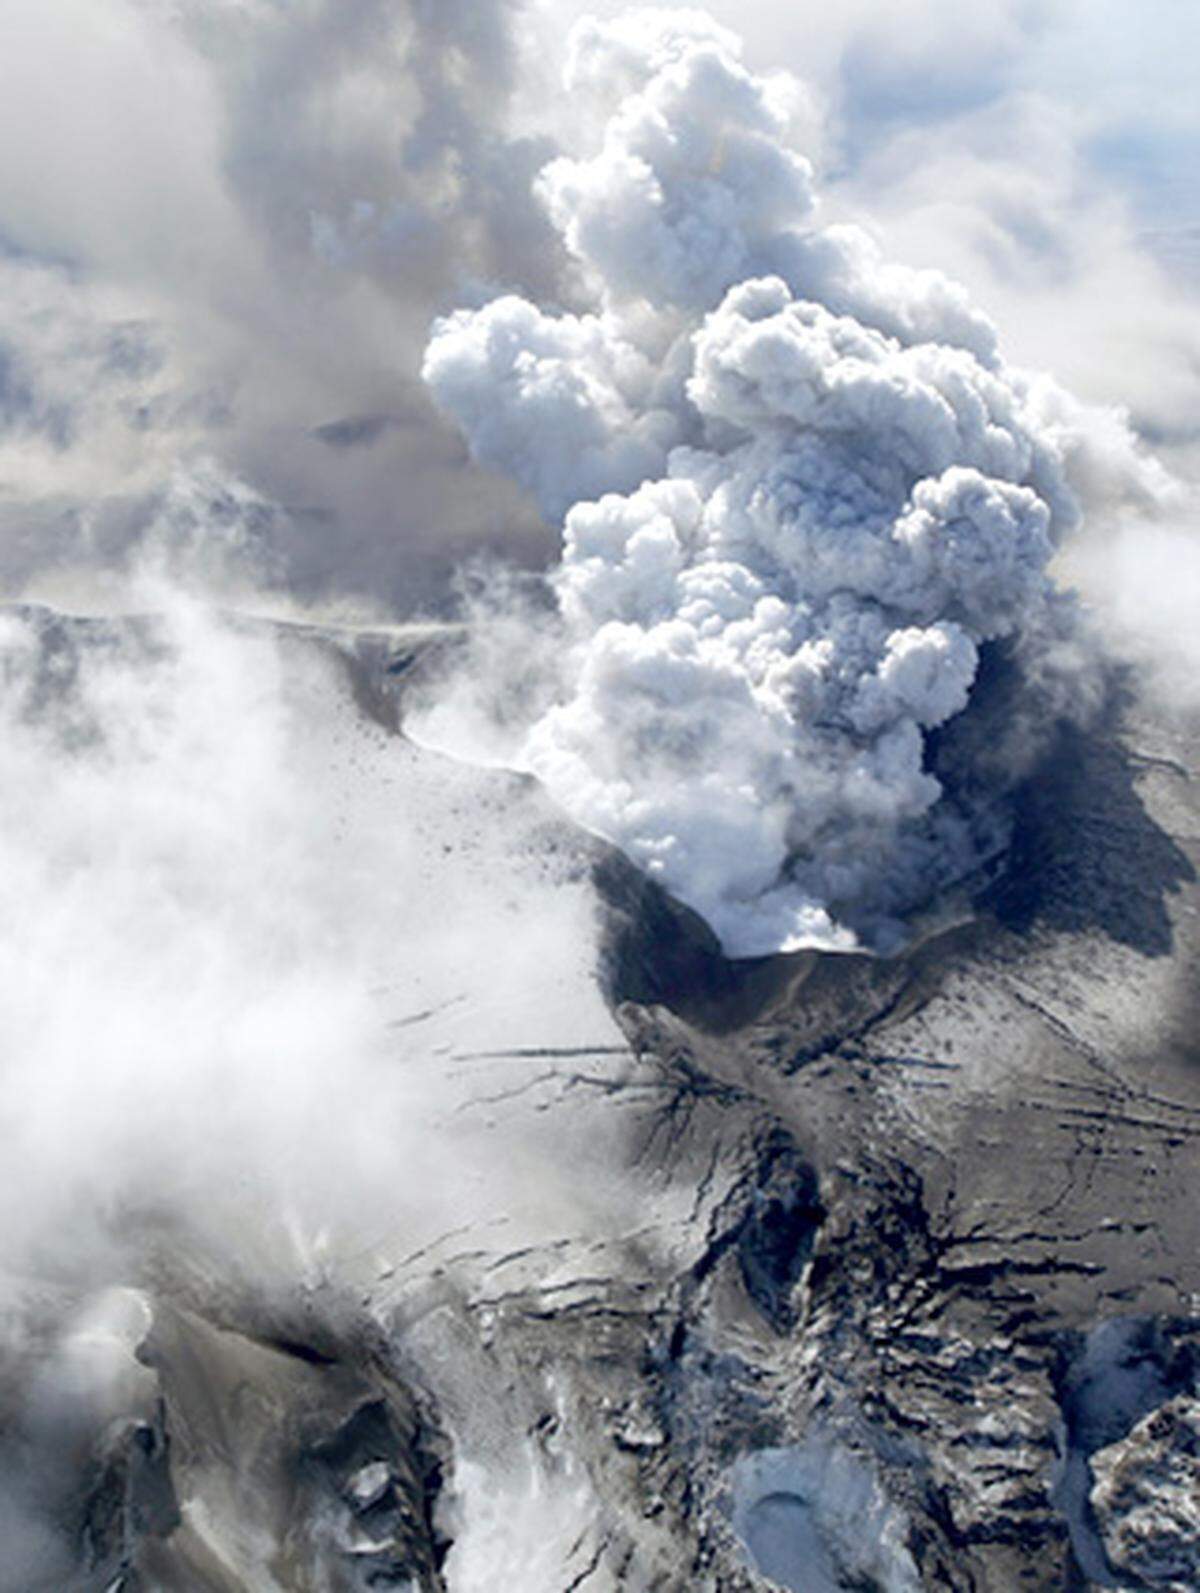 Unter dem Gletscher befindet sich ein selten aktiver Vulkan, der mit Eyjafjallajökull den selben Namen trägt wie das ihn umgebende Eismassiv. Eyjafjallajökull heißt sinngemäß Eyja-fjalla-Gletscher, Eyja-fjalla steht für "Inselberg".